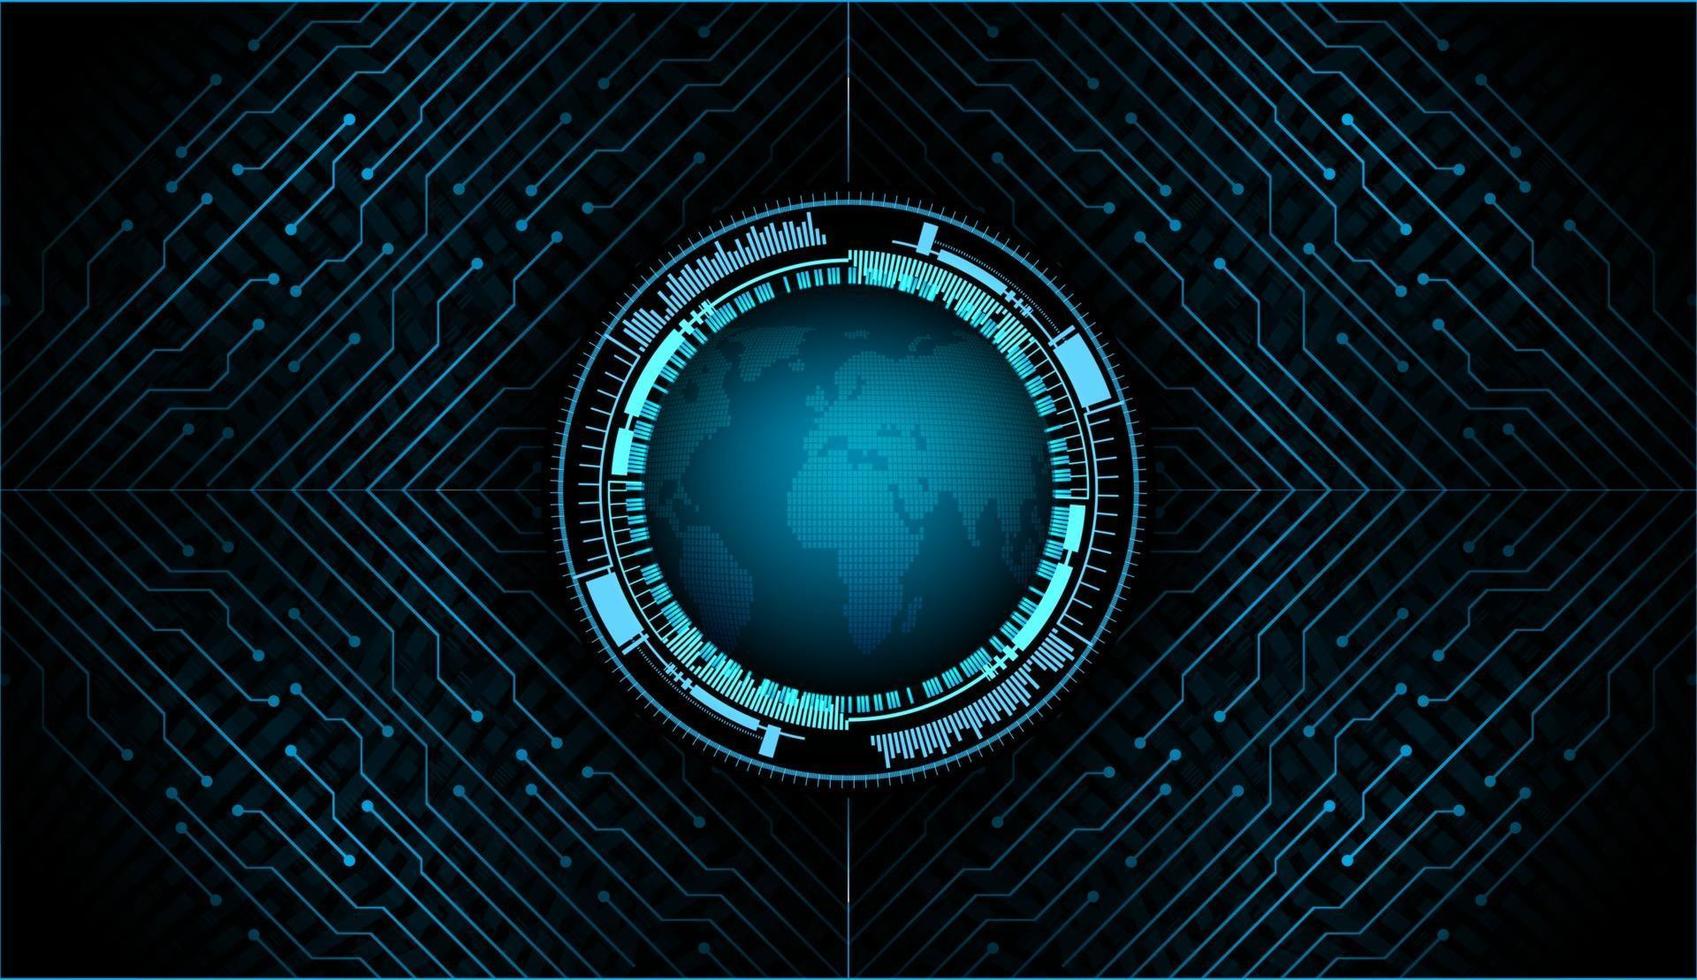 Weltbinärplatine Zukunftstechnologie, Blue Hud Cyber Security Konzept Hintergrund vektor